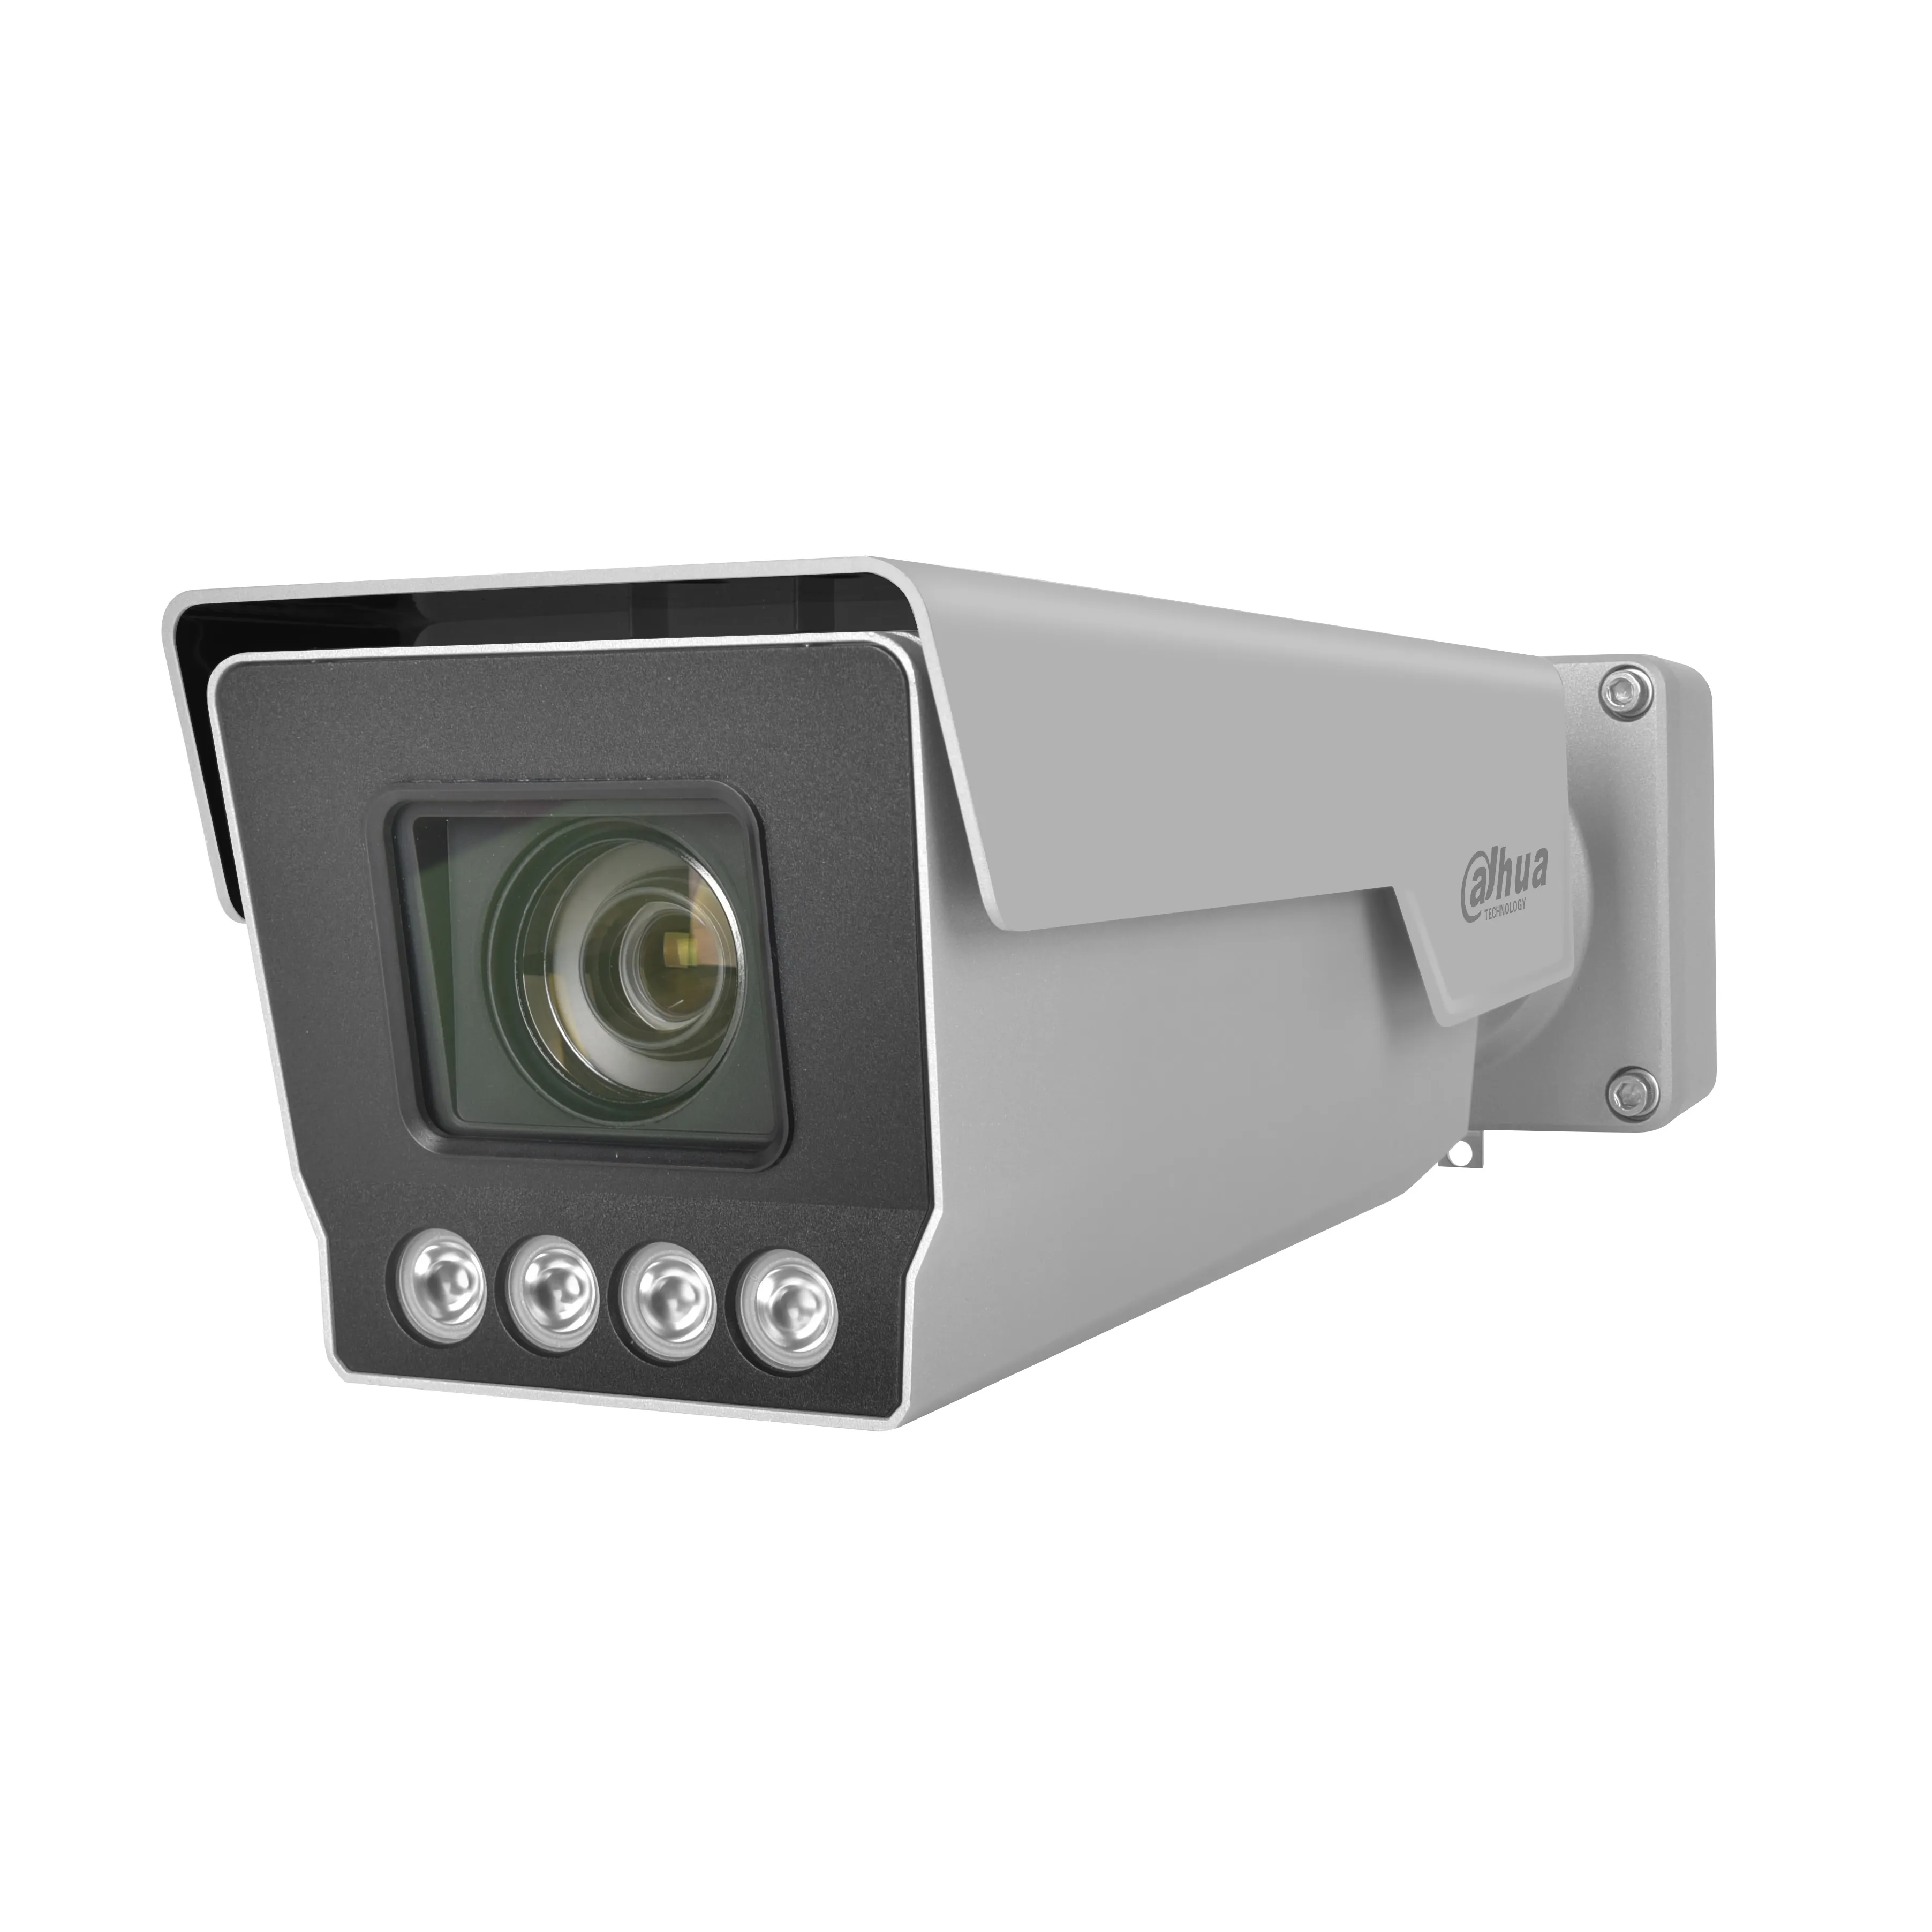 Câmera de licença automática sdk hd, câmera para sistema de reconhecimento de placa, gestão de veículos, anpr/lpr/alpr